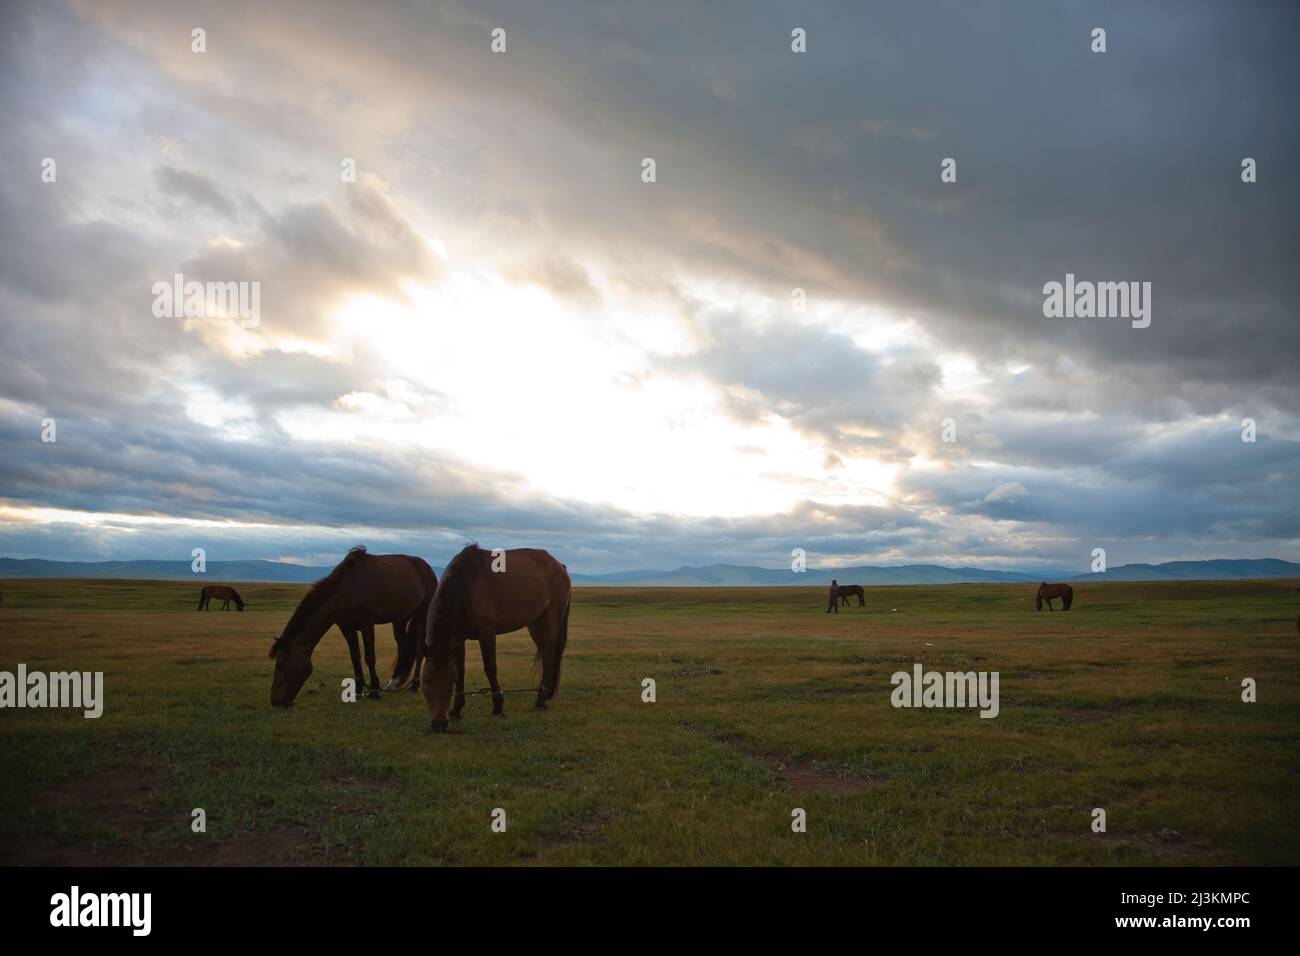 Horses graze on the Mongolian steppe. Stock Photo